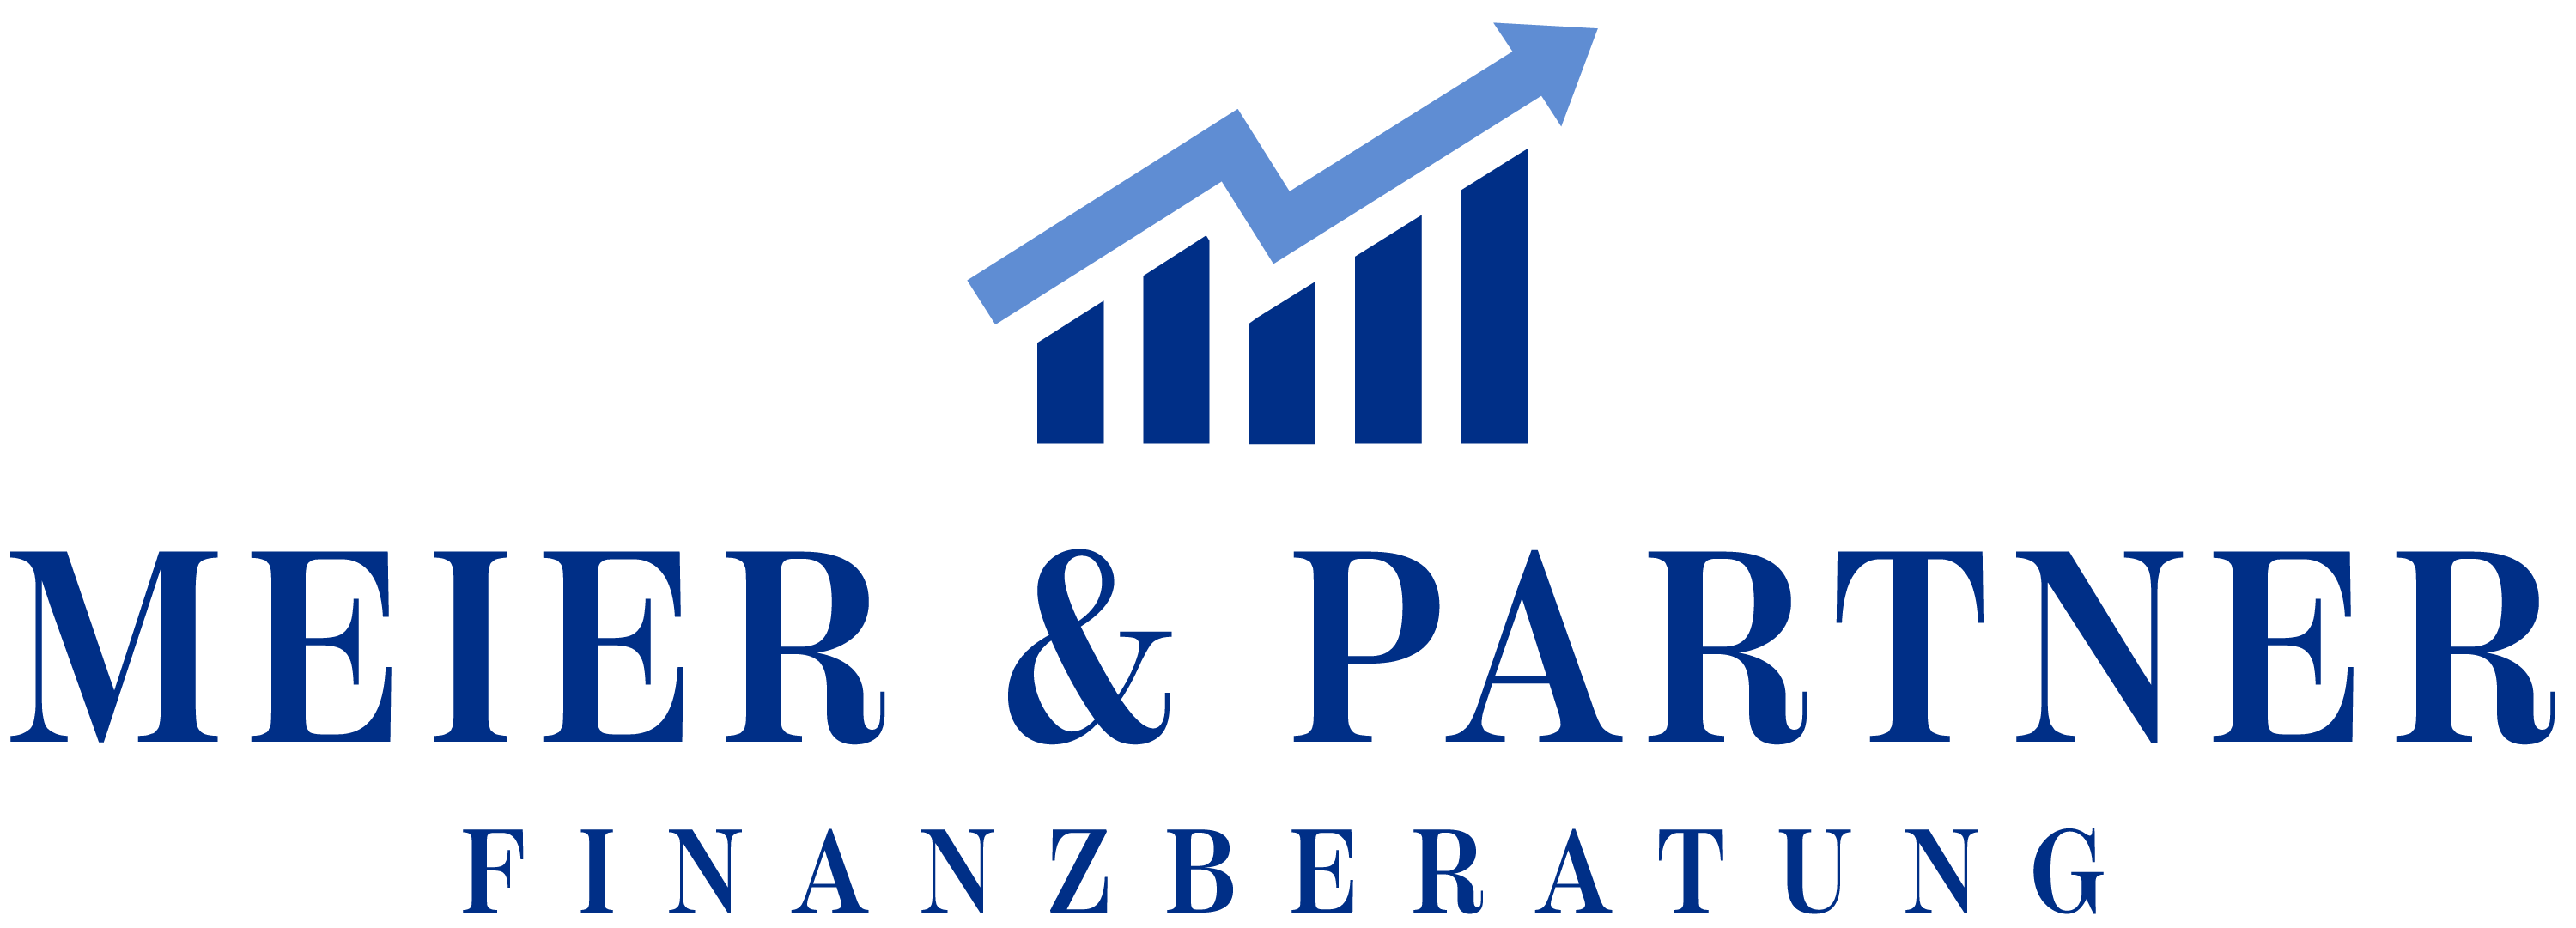 Meier-Partner-logo